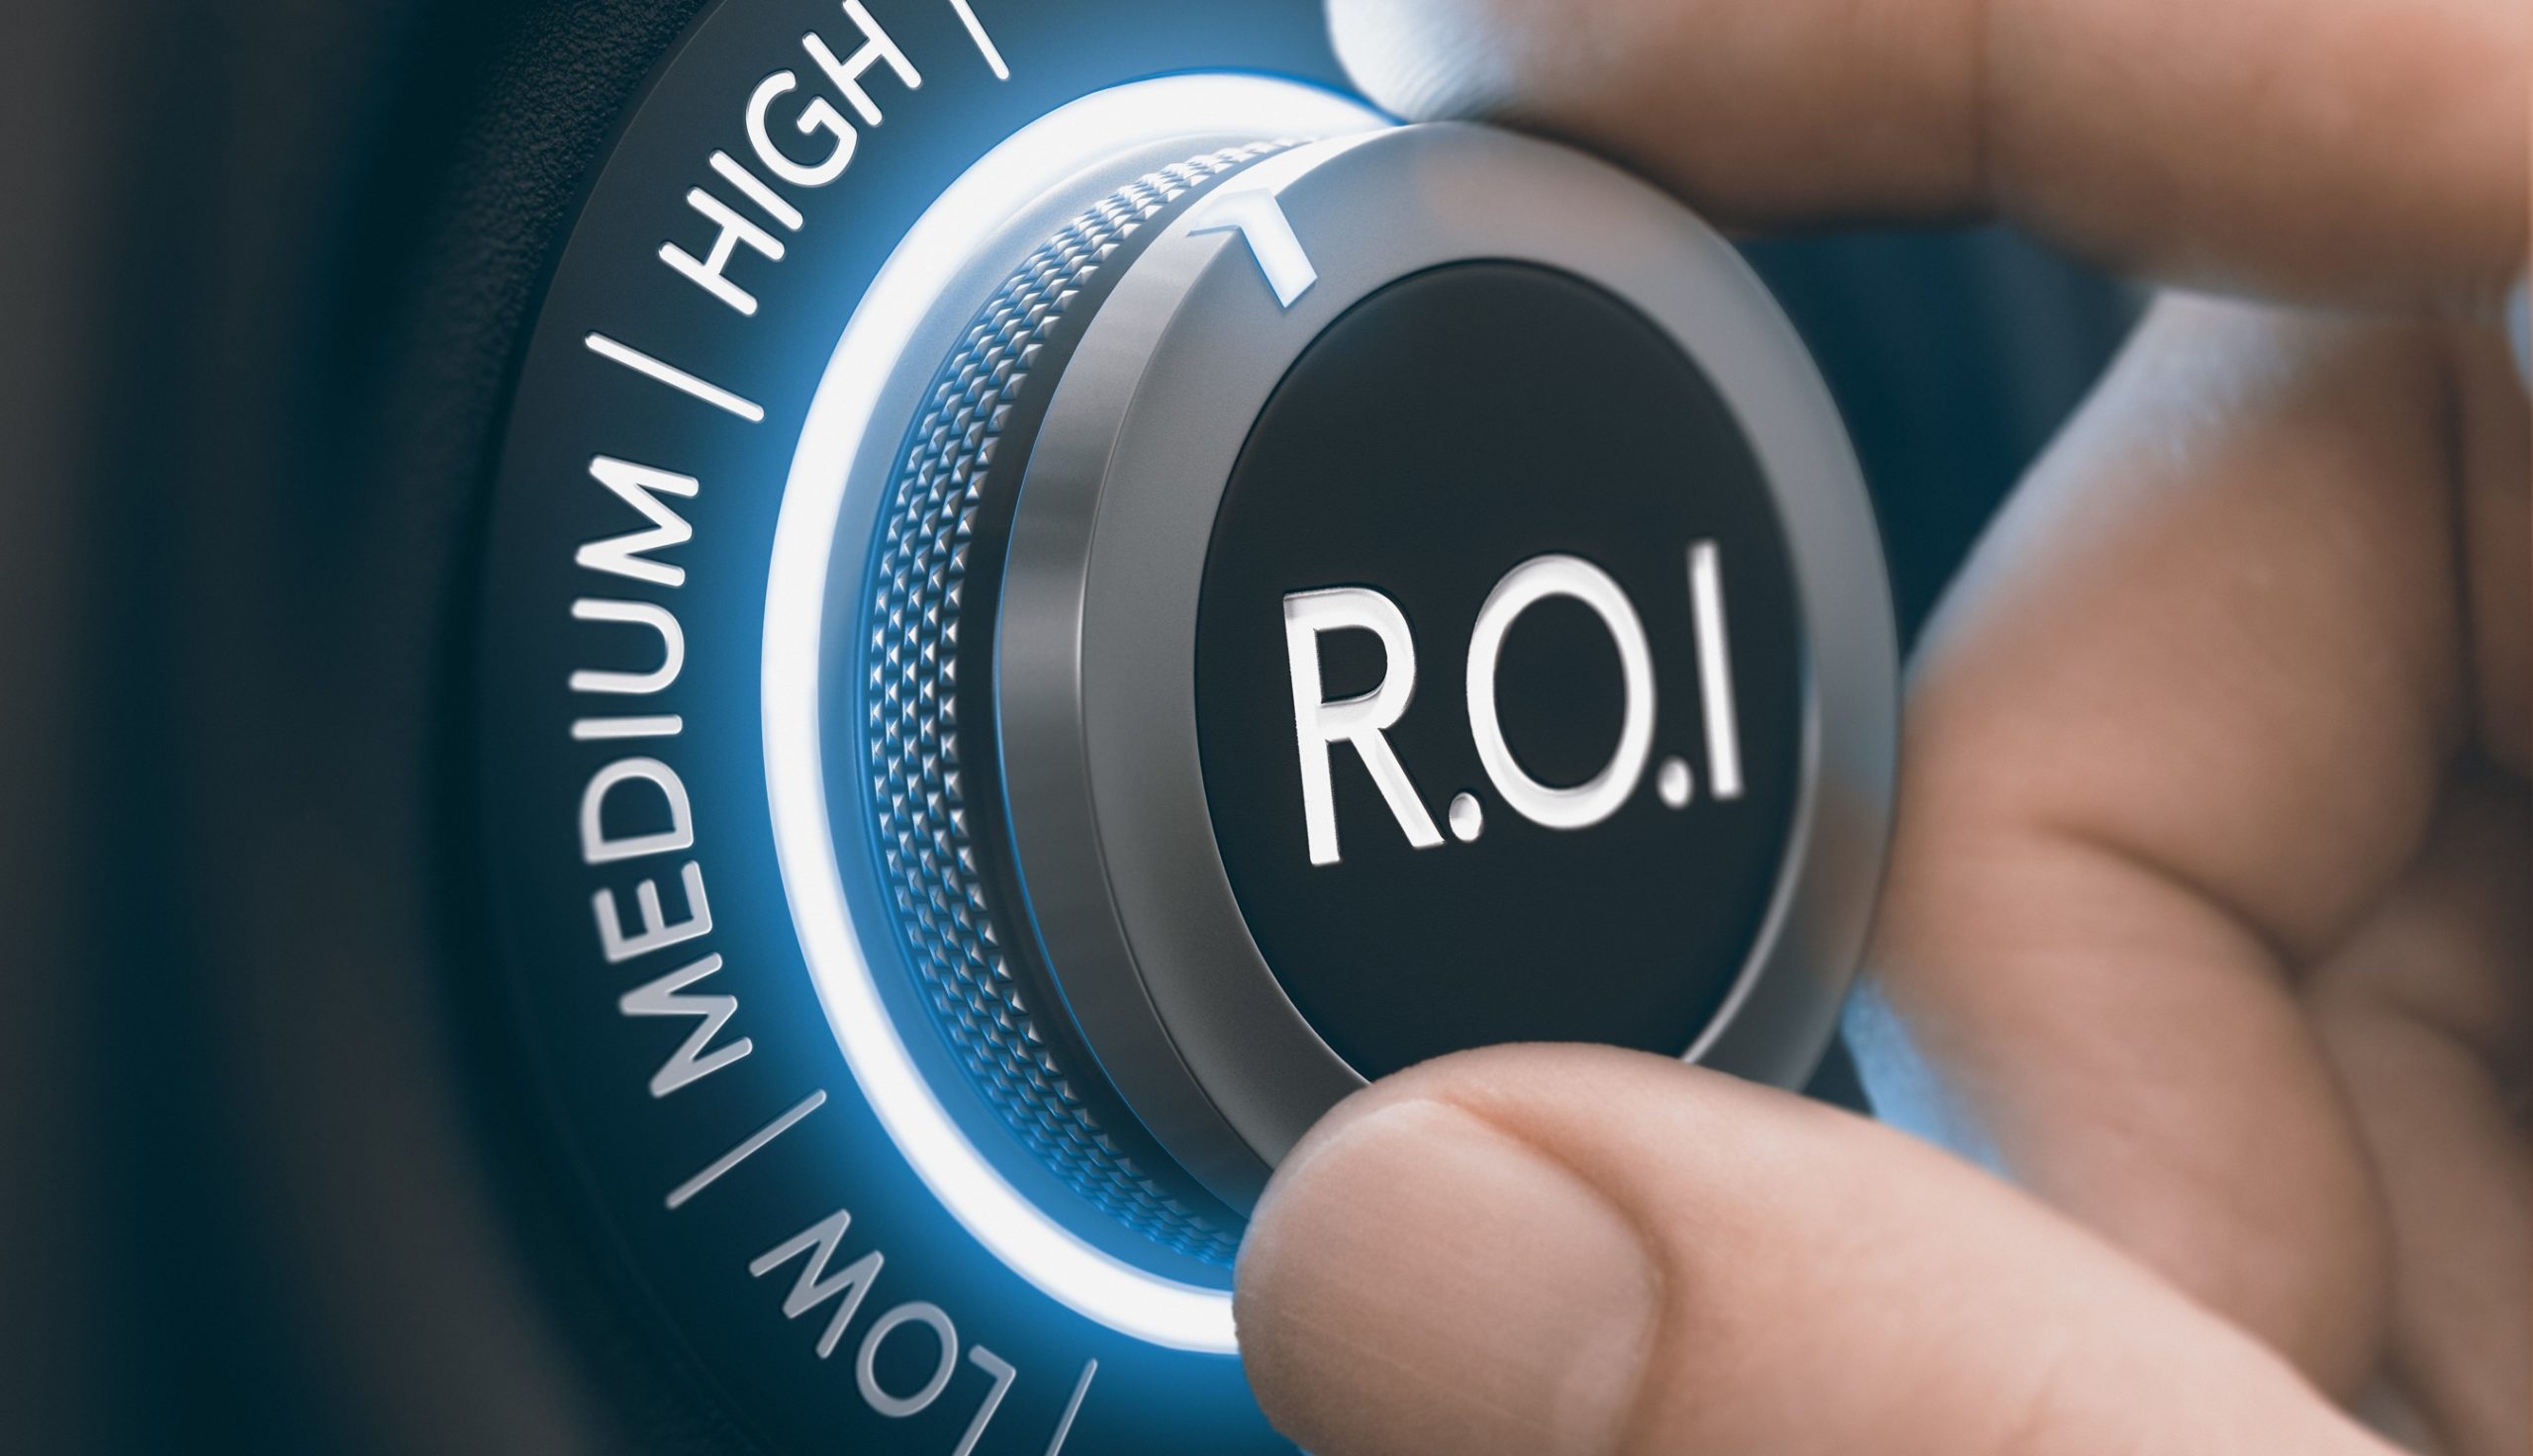 The Best Methodologies for Measuring ROI | PM360